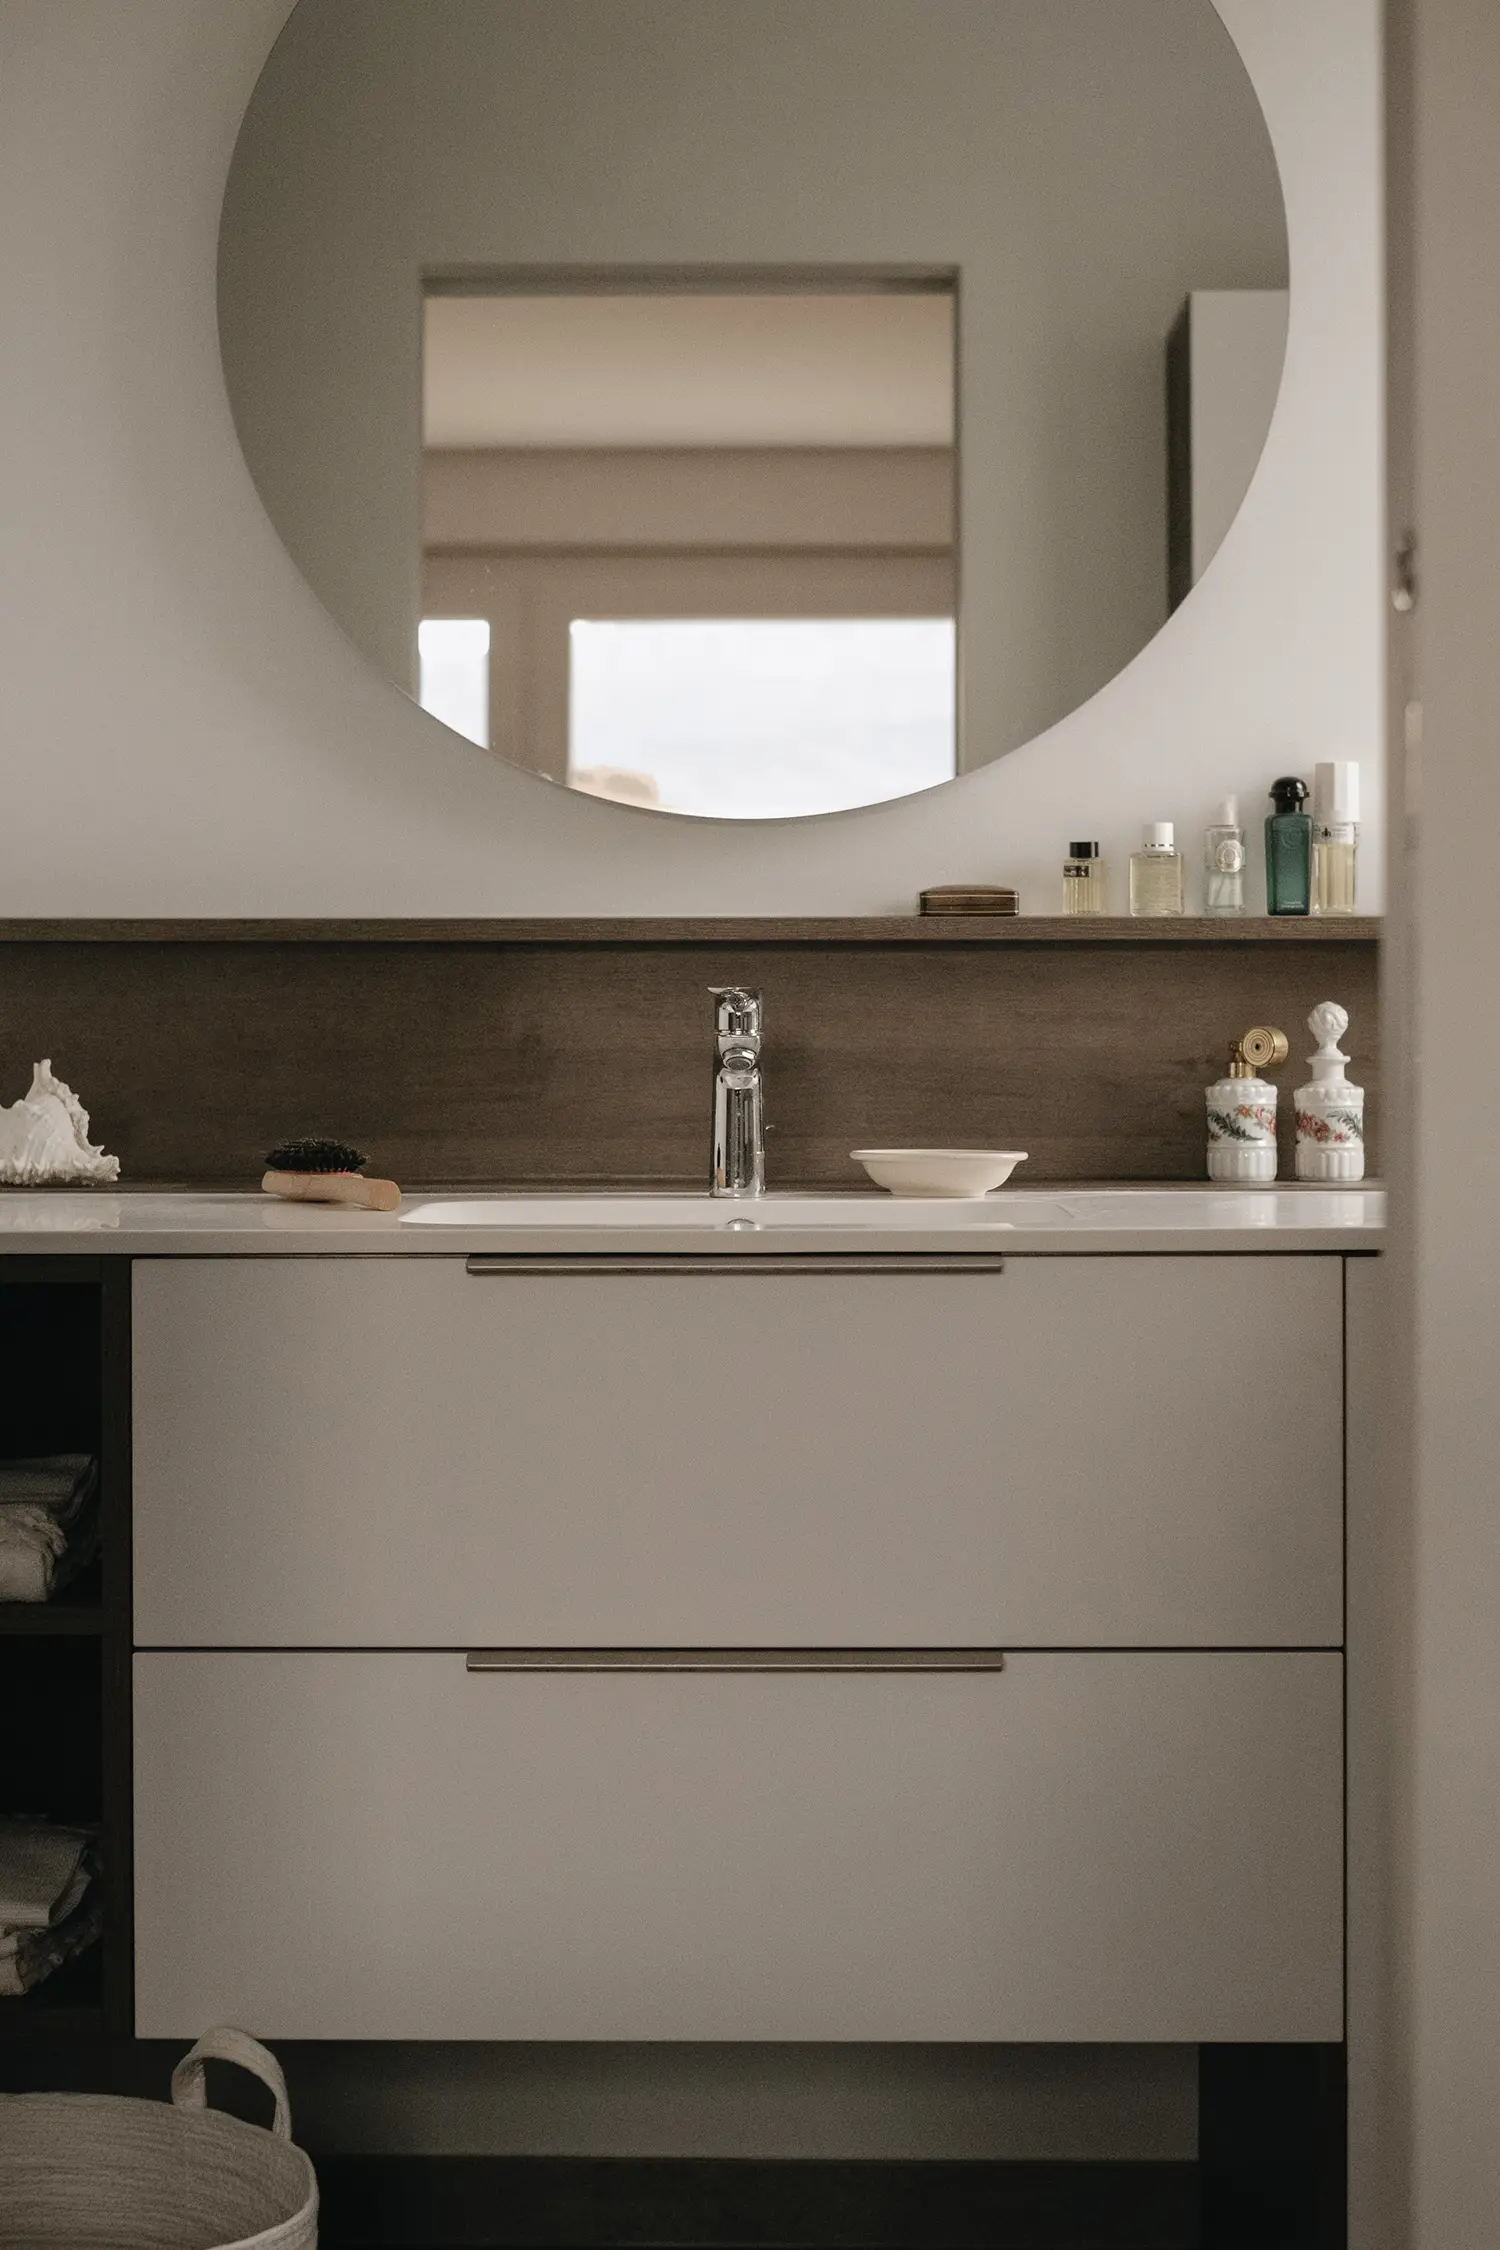 Foto d’insieme mobile bagno stessi toni di bianco e legno usati per la cucina per creare un’armonica connessione; progetto di ristrutturazione dello studio Elles Interior Design